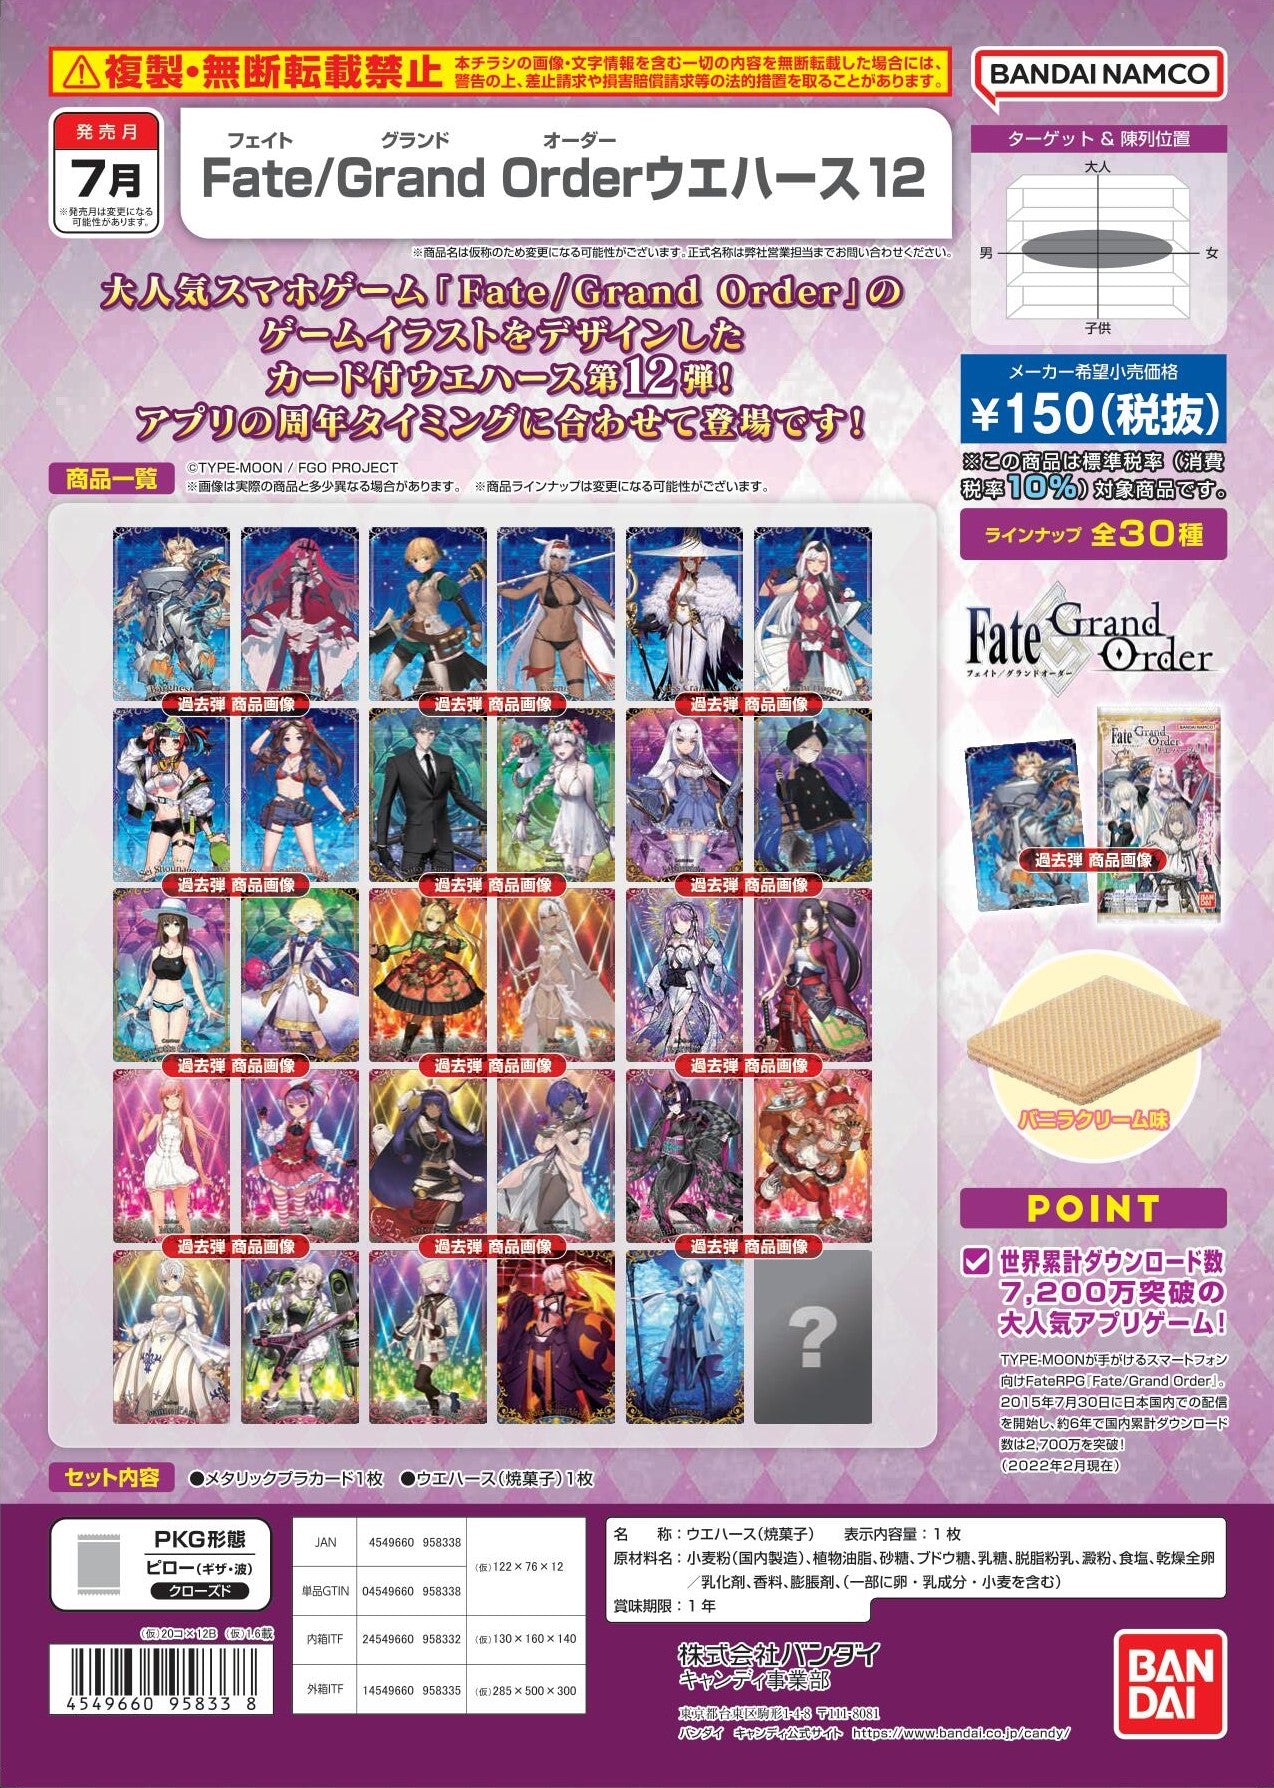 【預訂日期至25-Mar-23】Bandai - JPY150 Fate Grand Order Wafer 12 (4549660958338)  (Box of 20pcs)